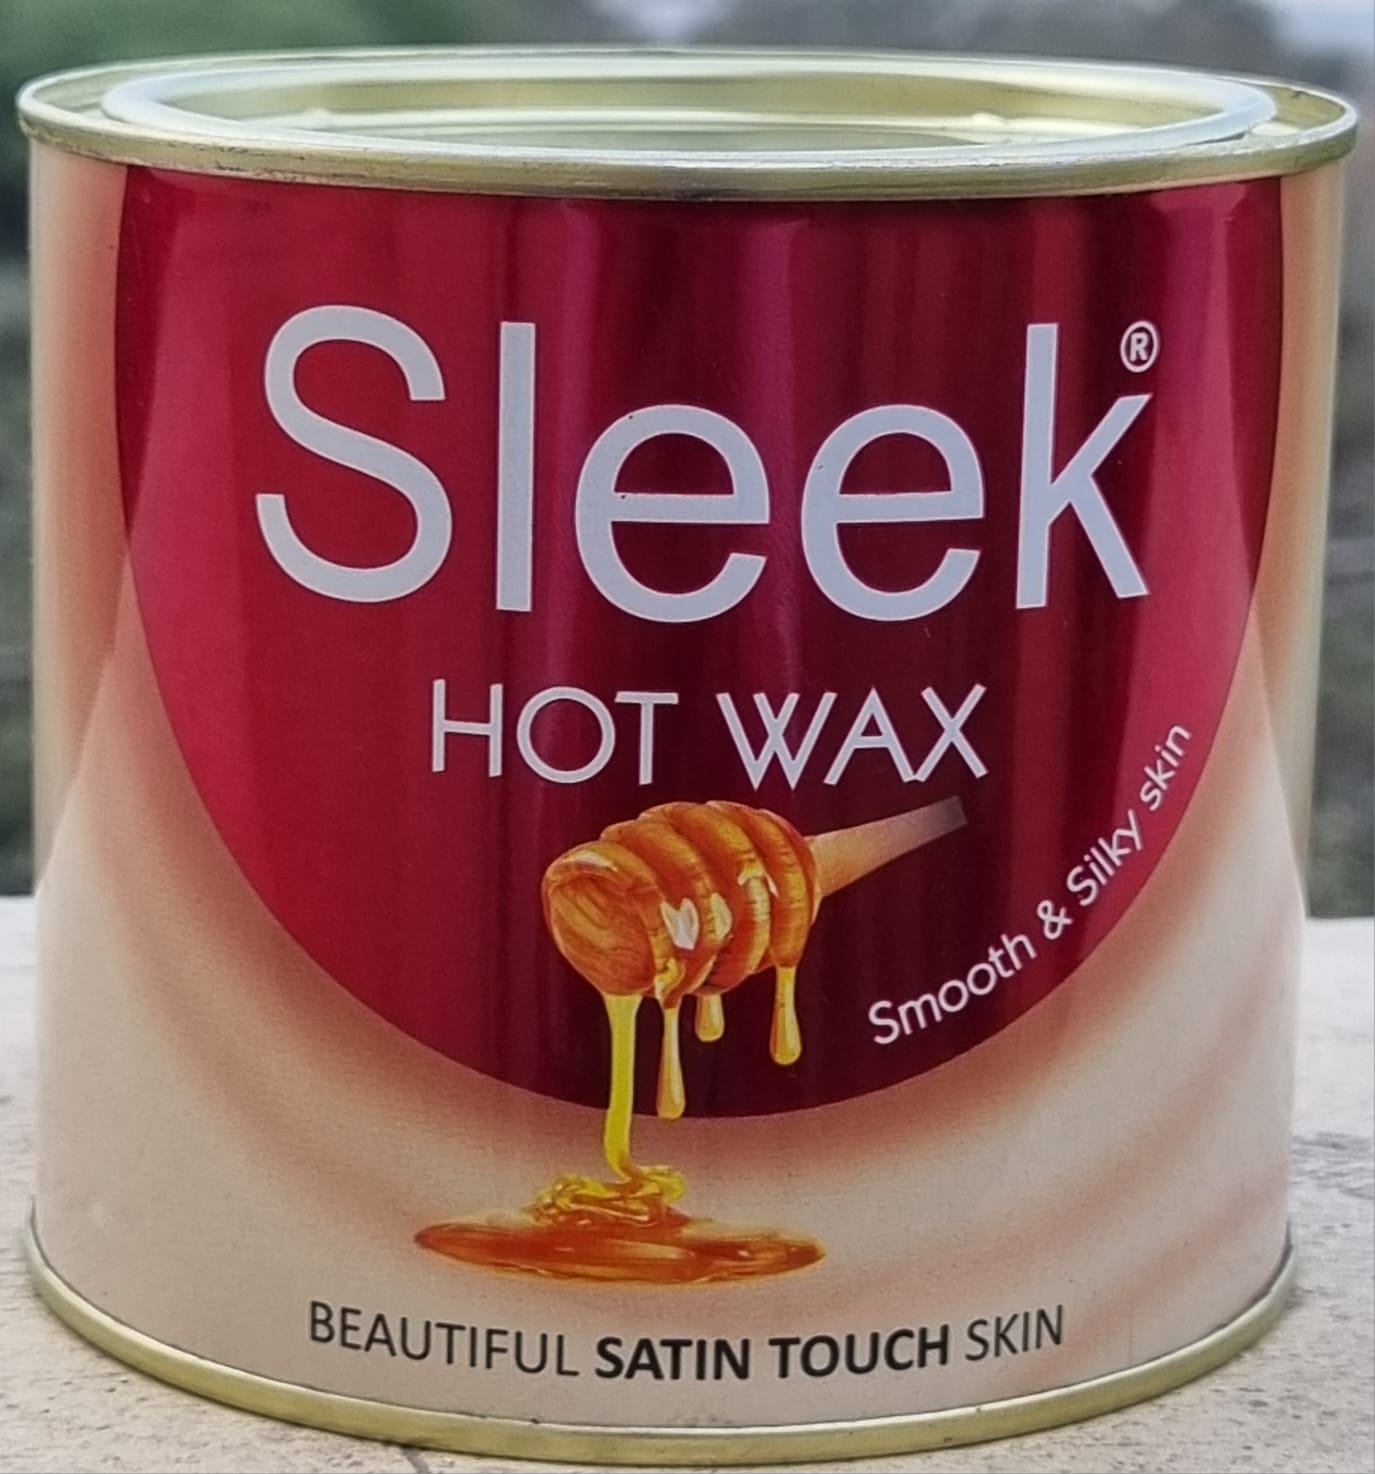 sleek-cold-wax-600-g